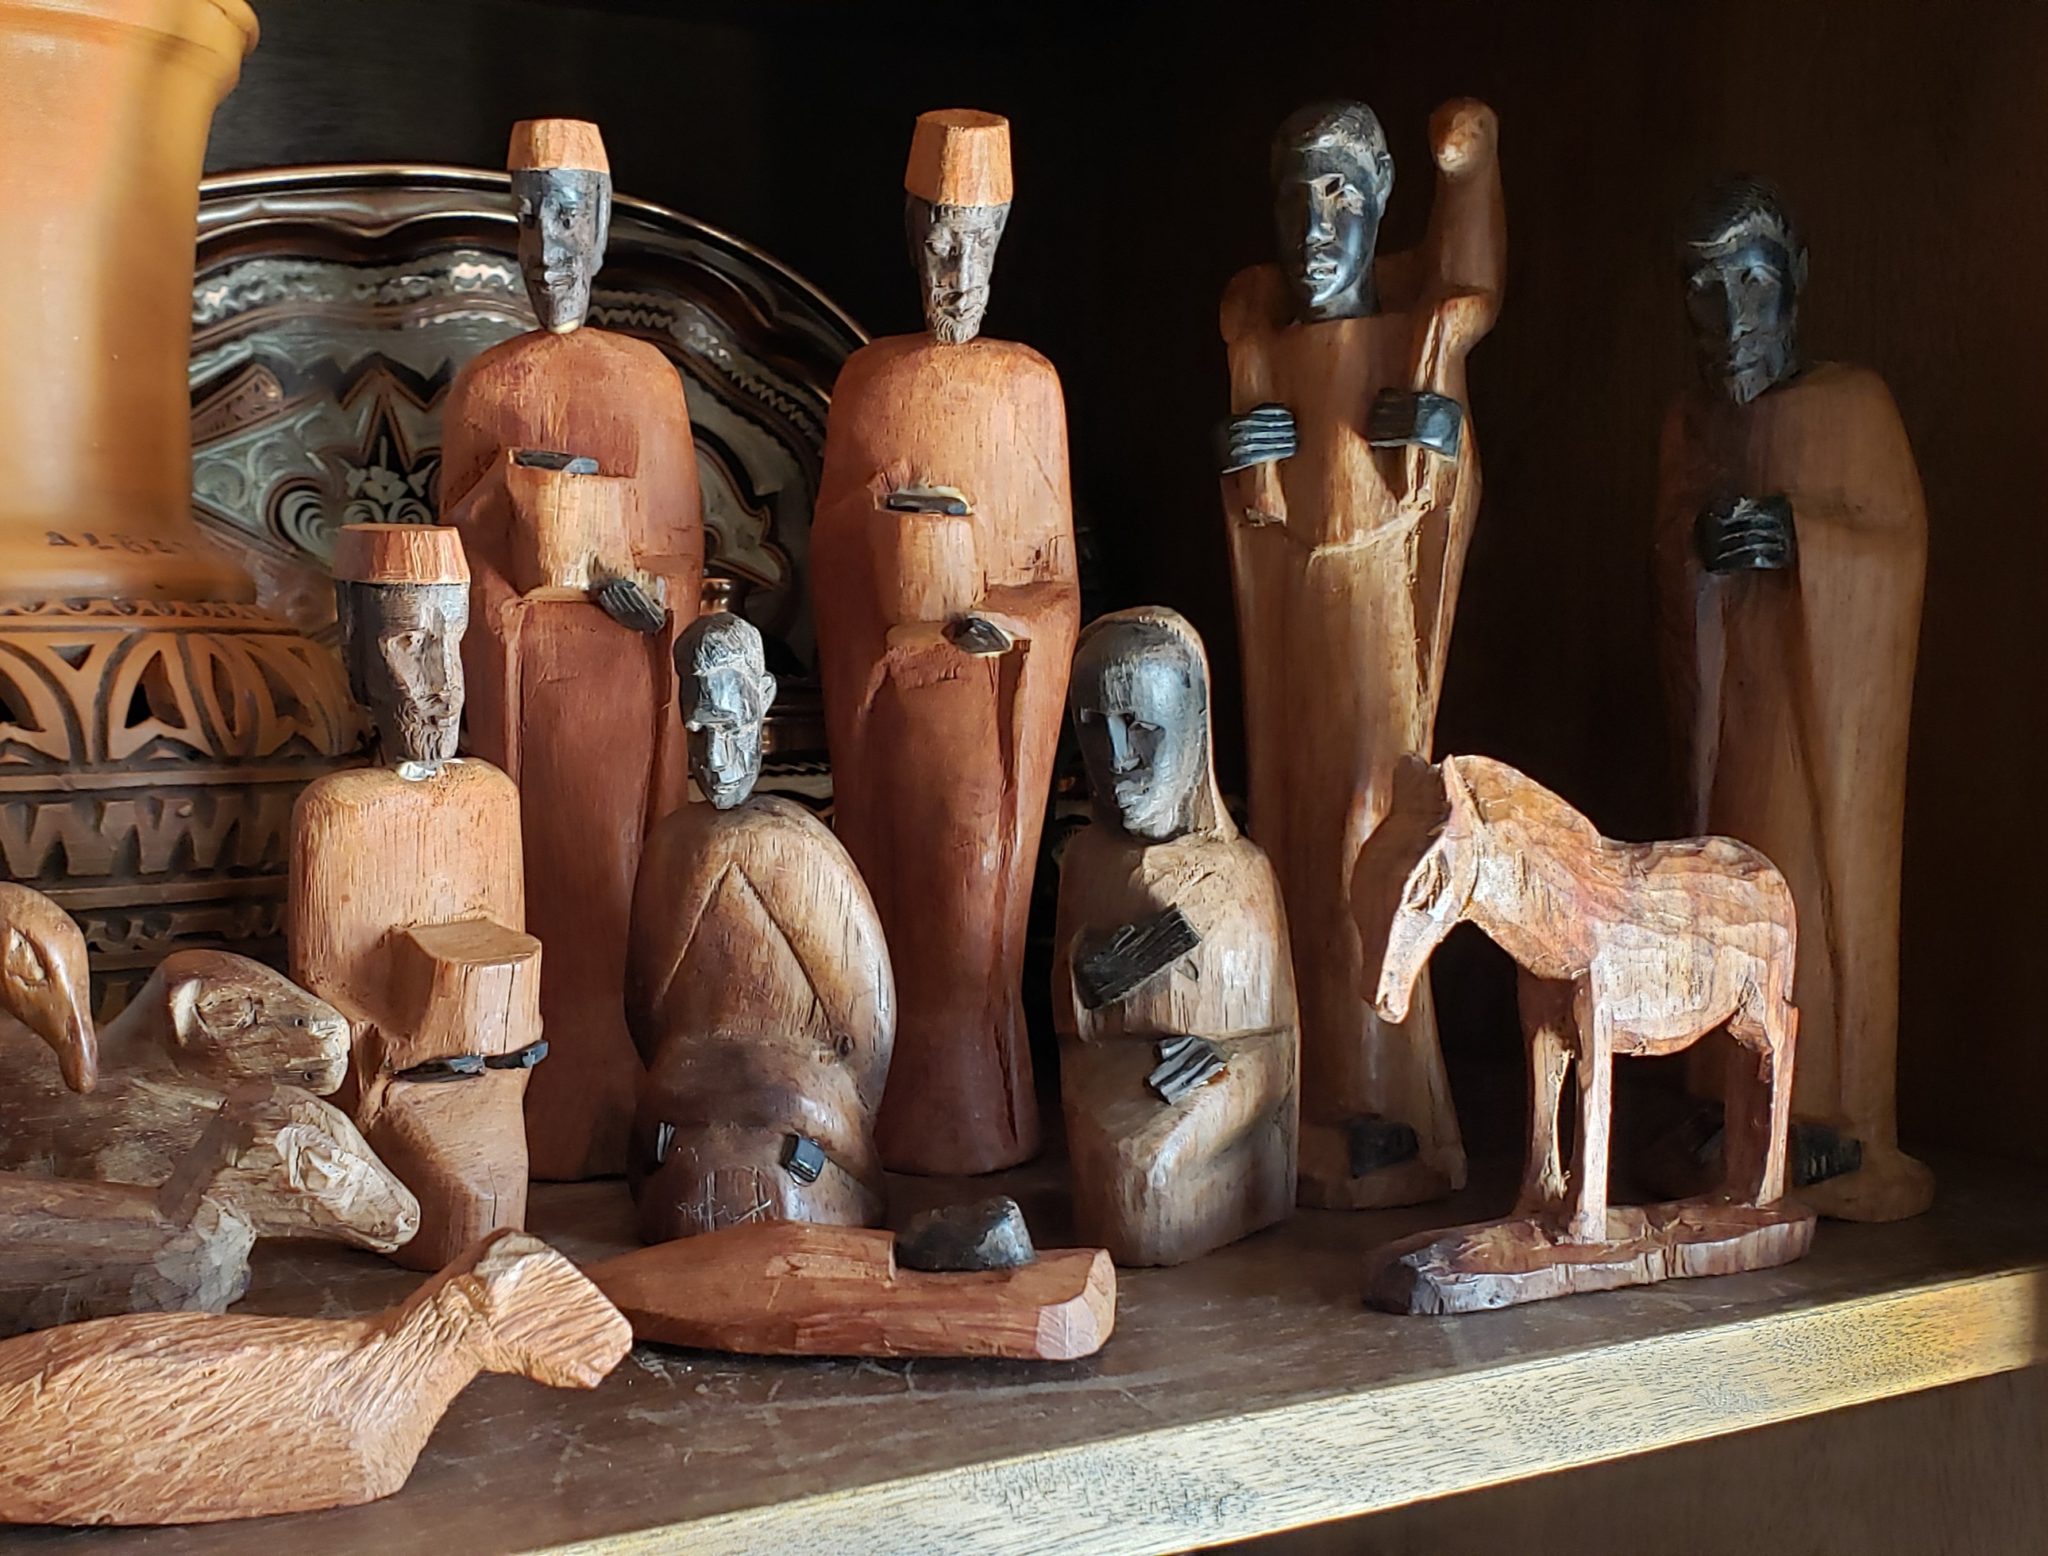 Un belén de madera de estilo africano está expuesto en una estantería.